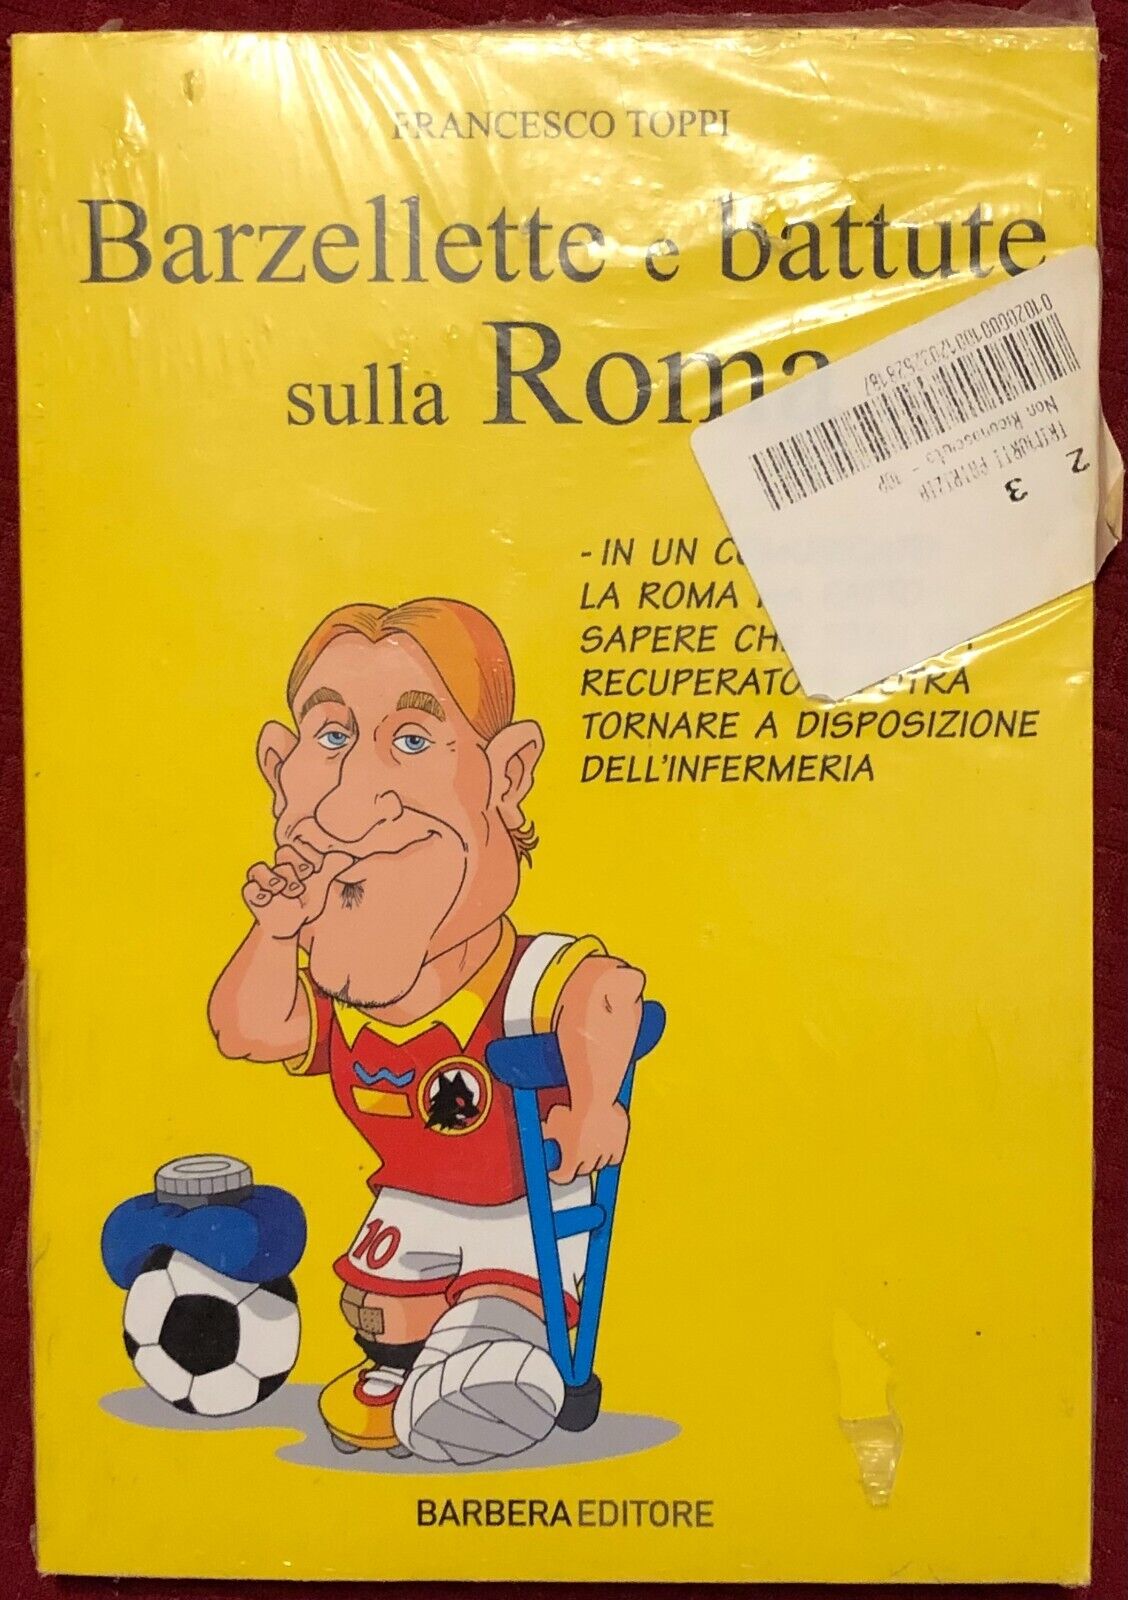 Barzellette e battute sulla Roma di Francesco Toppi,  2010,  Barbera Editore